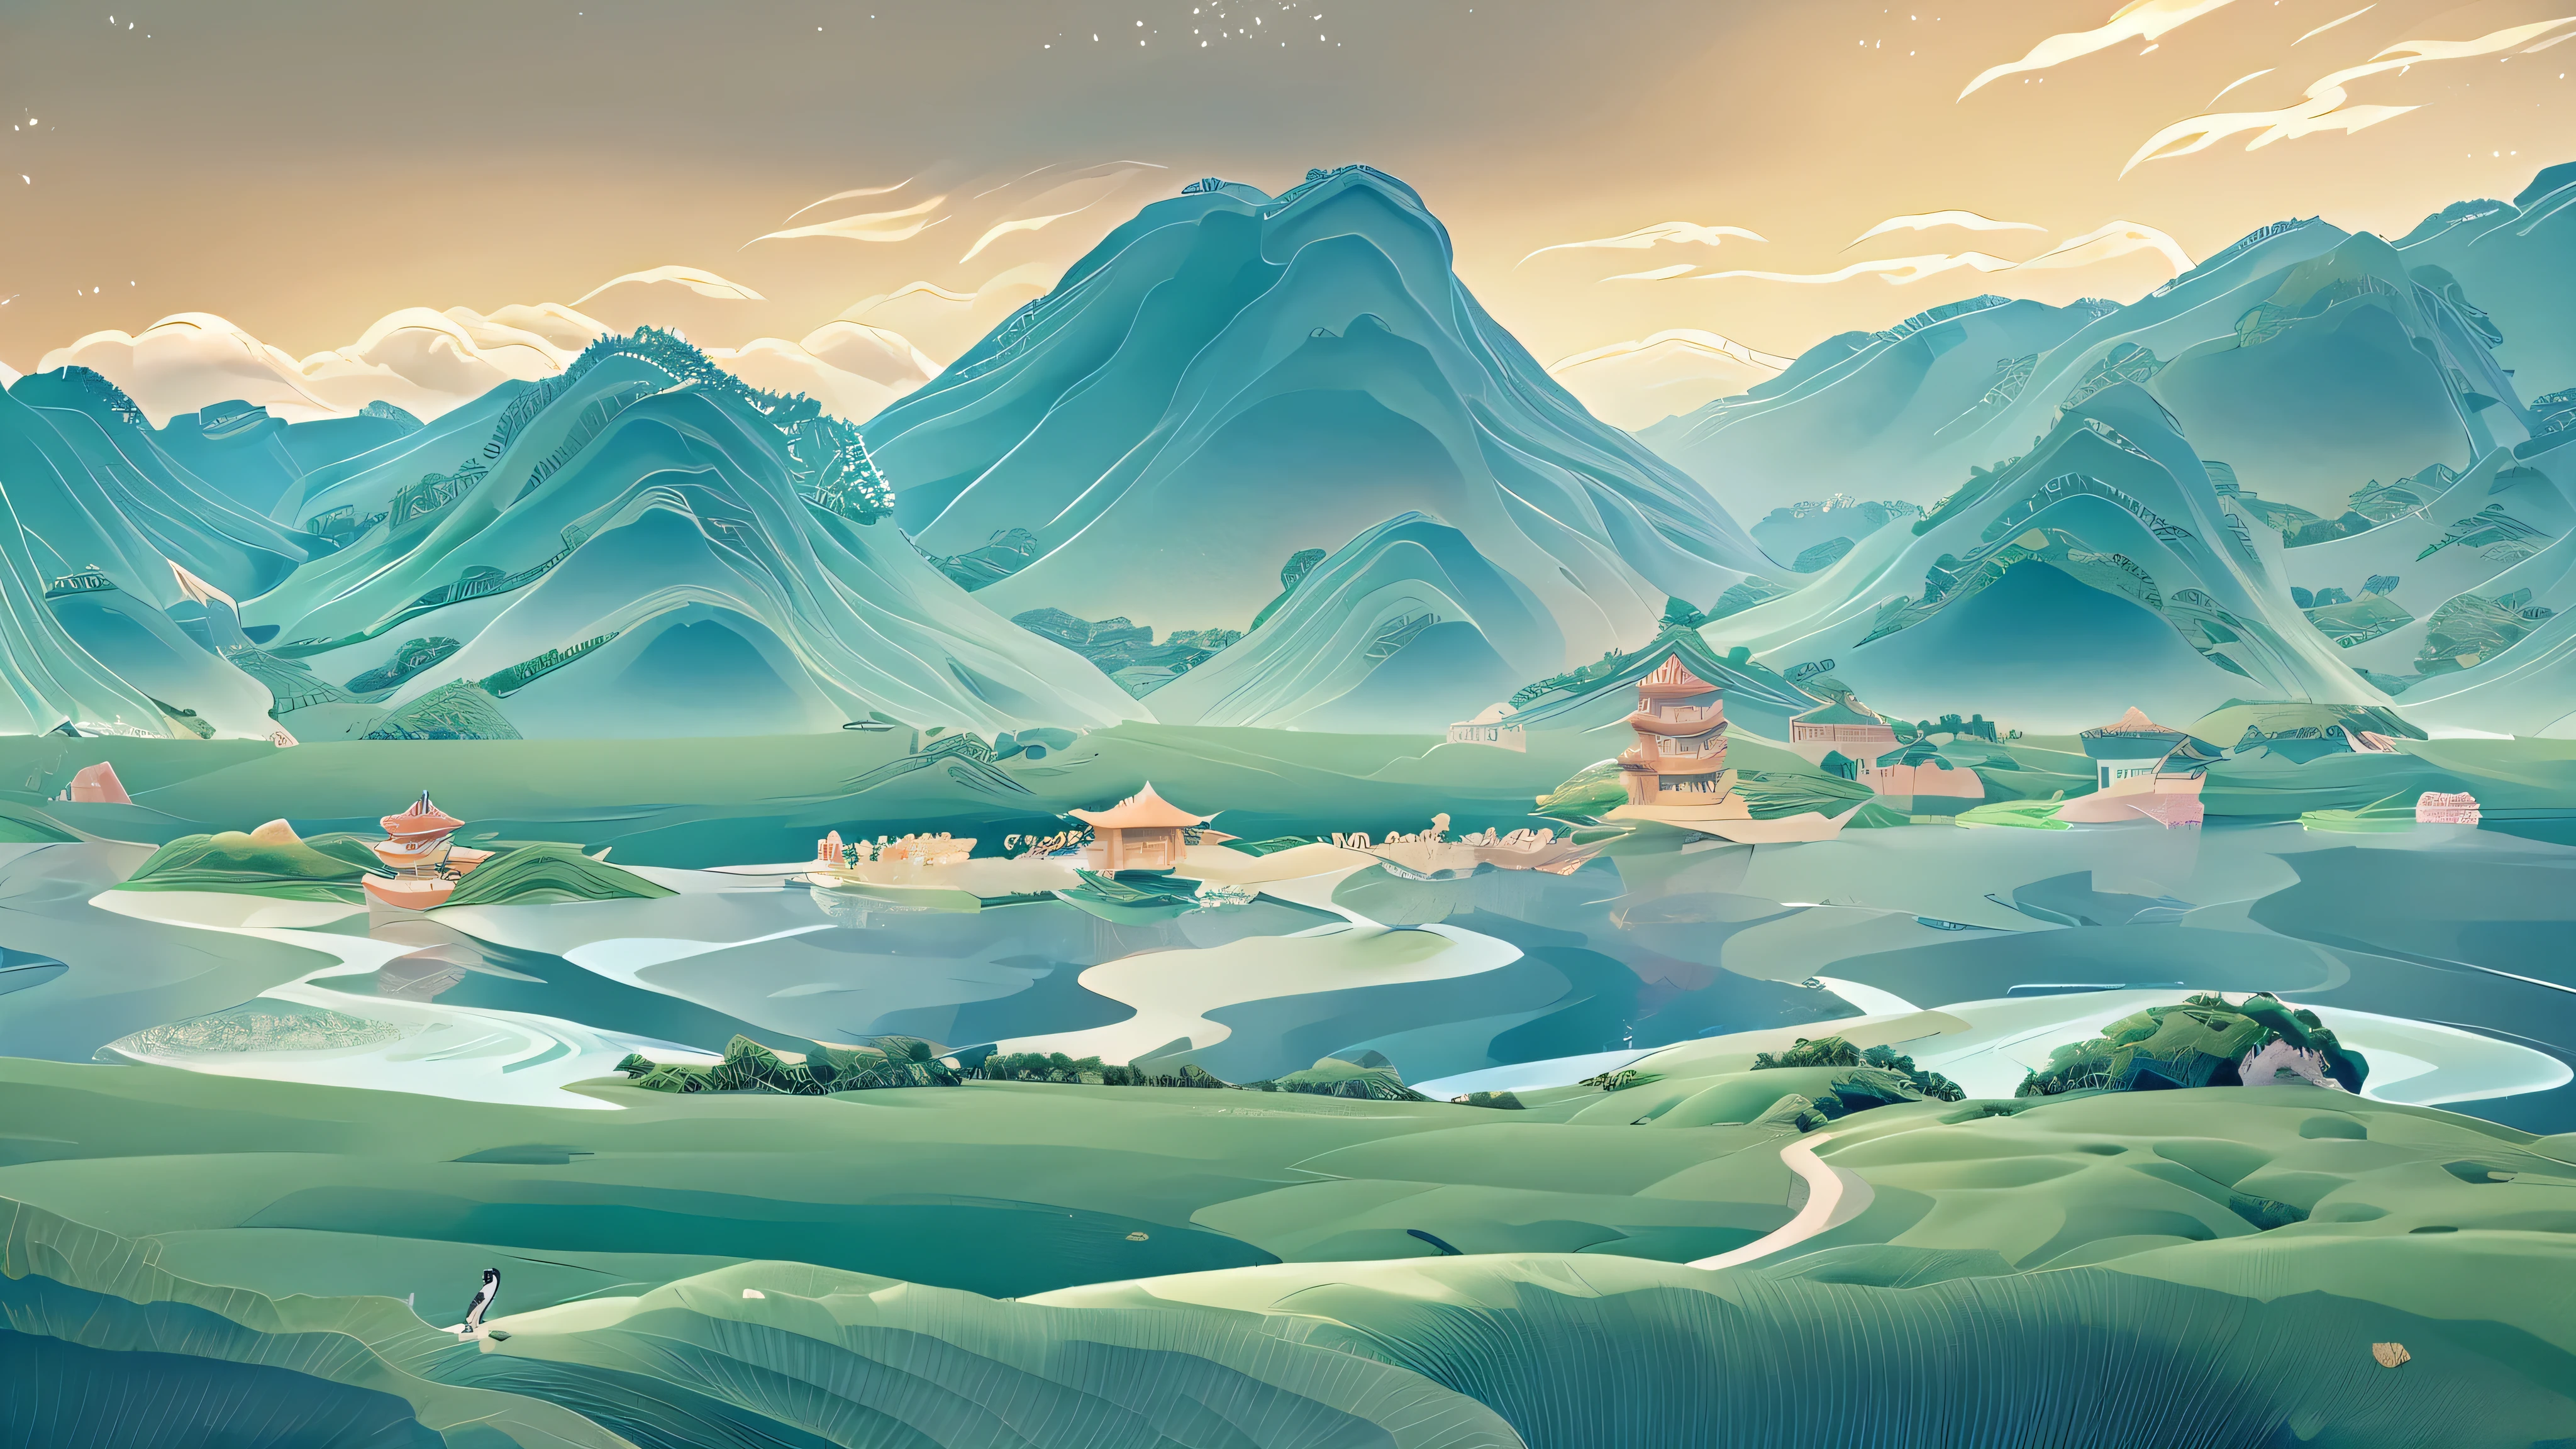 Berg，Wasser，klassisch，China，Anime-Landschaft，Die Farbe ist hell und elegant，Grün